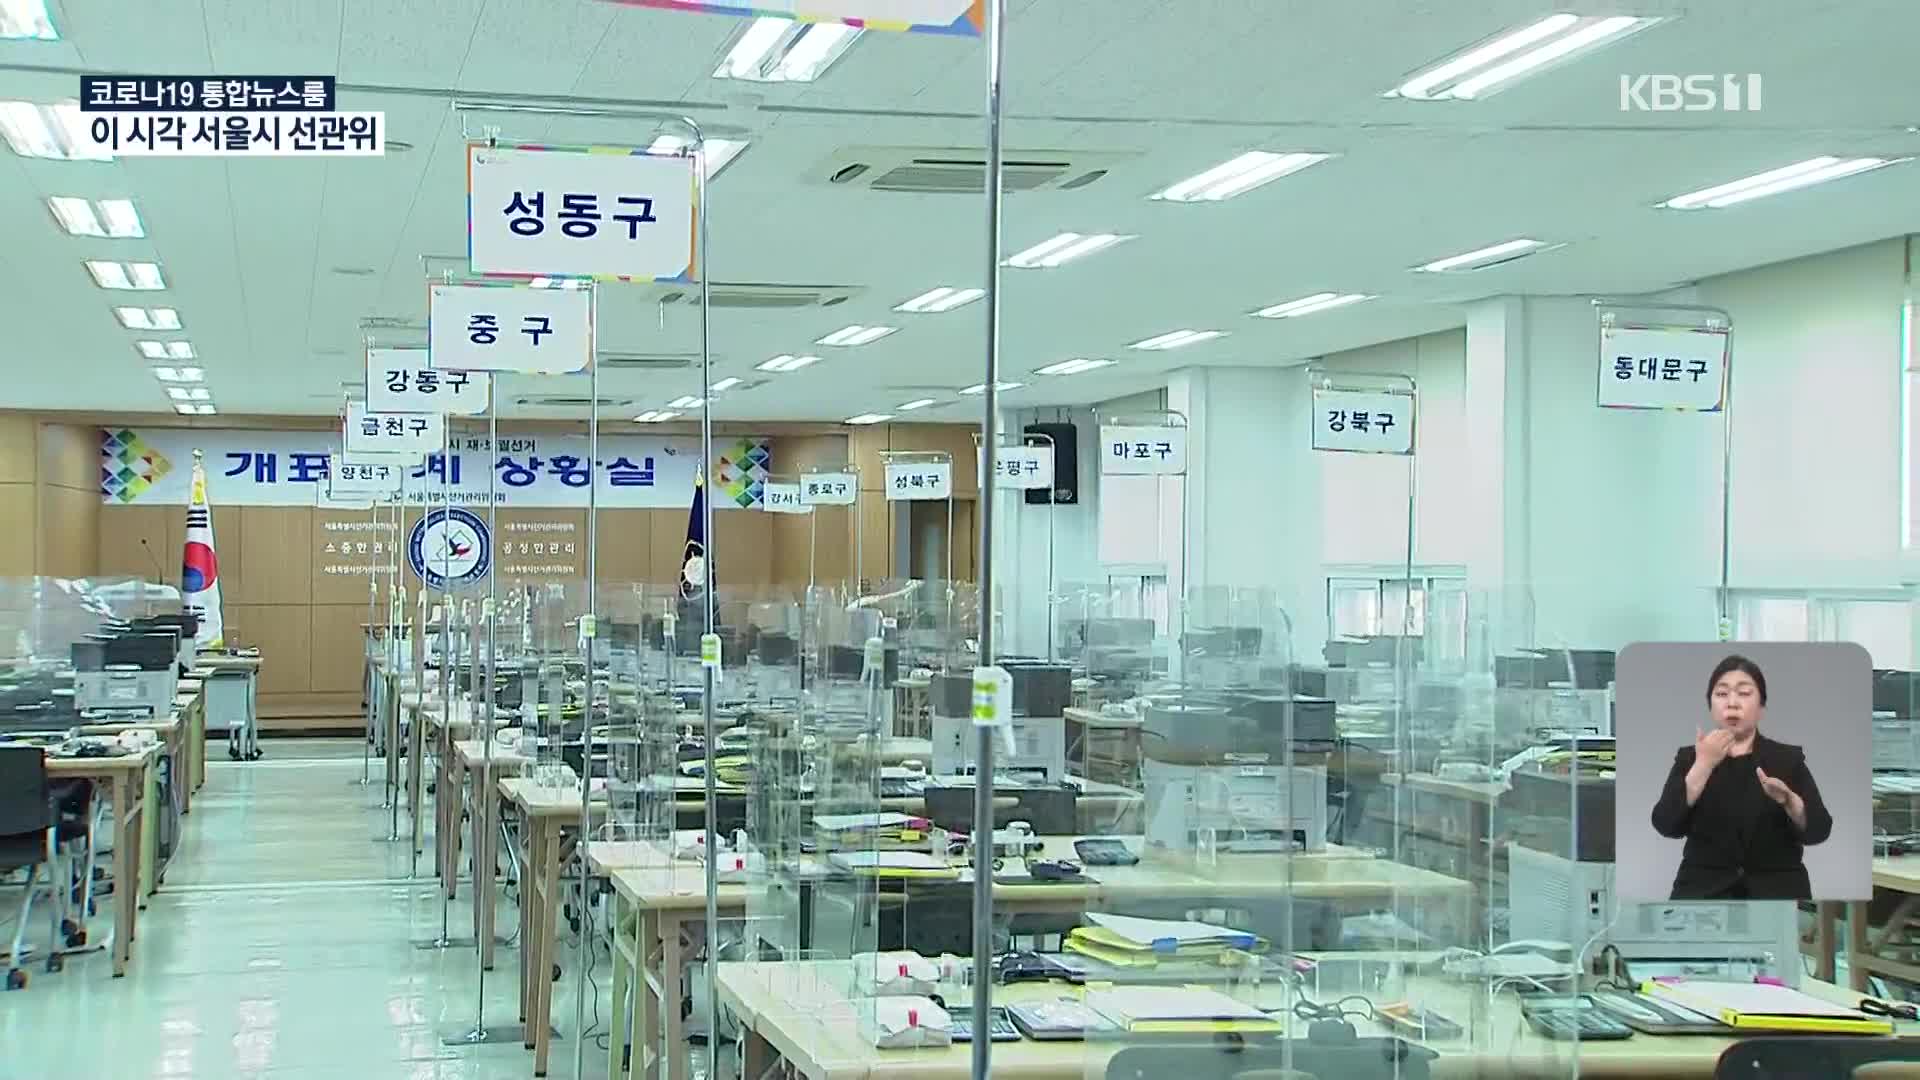 이 시각 서울시 선관위 투표율은?